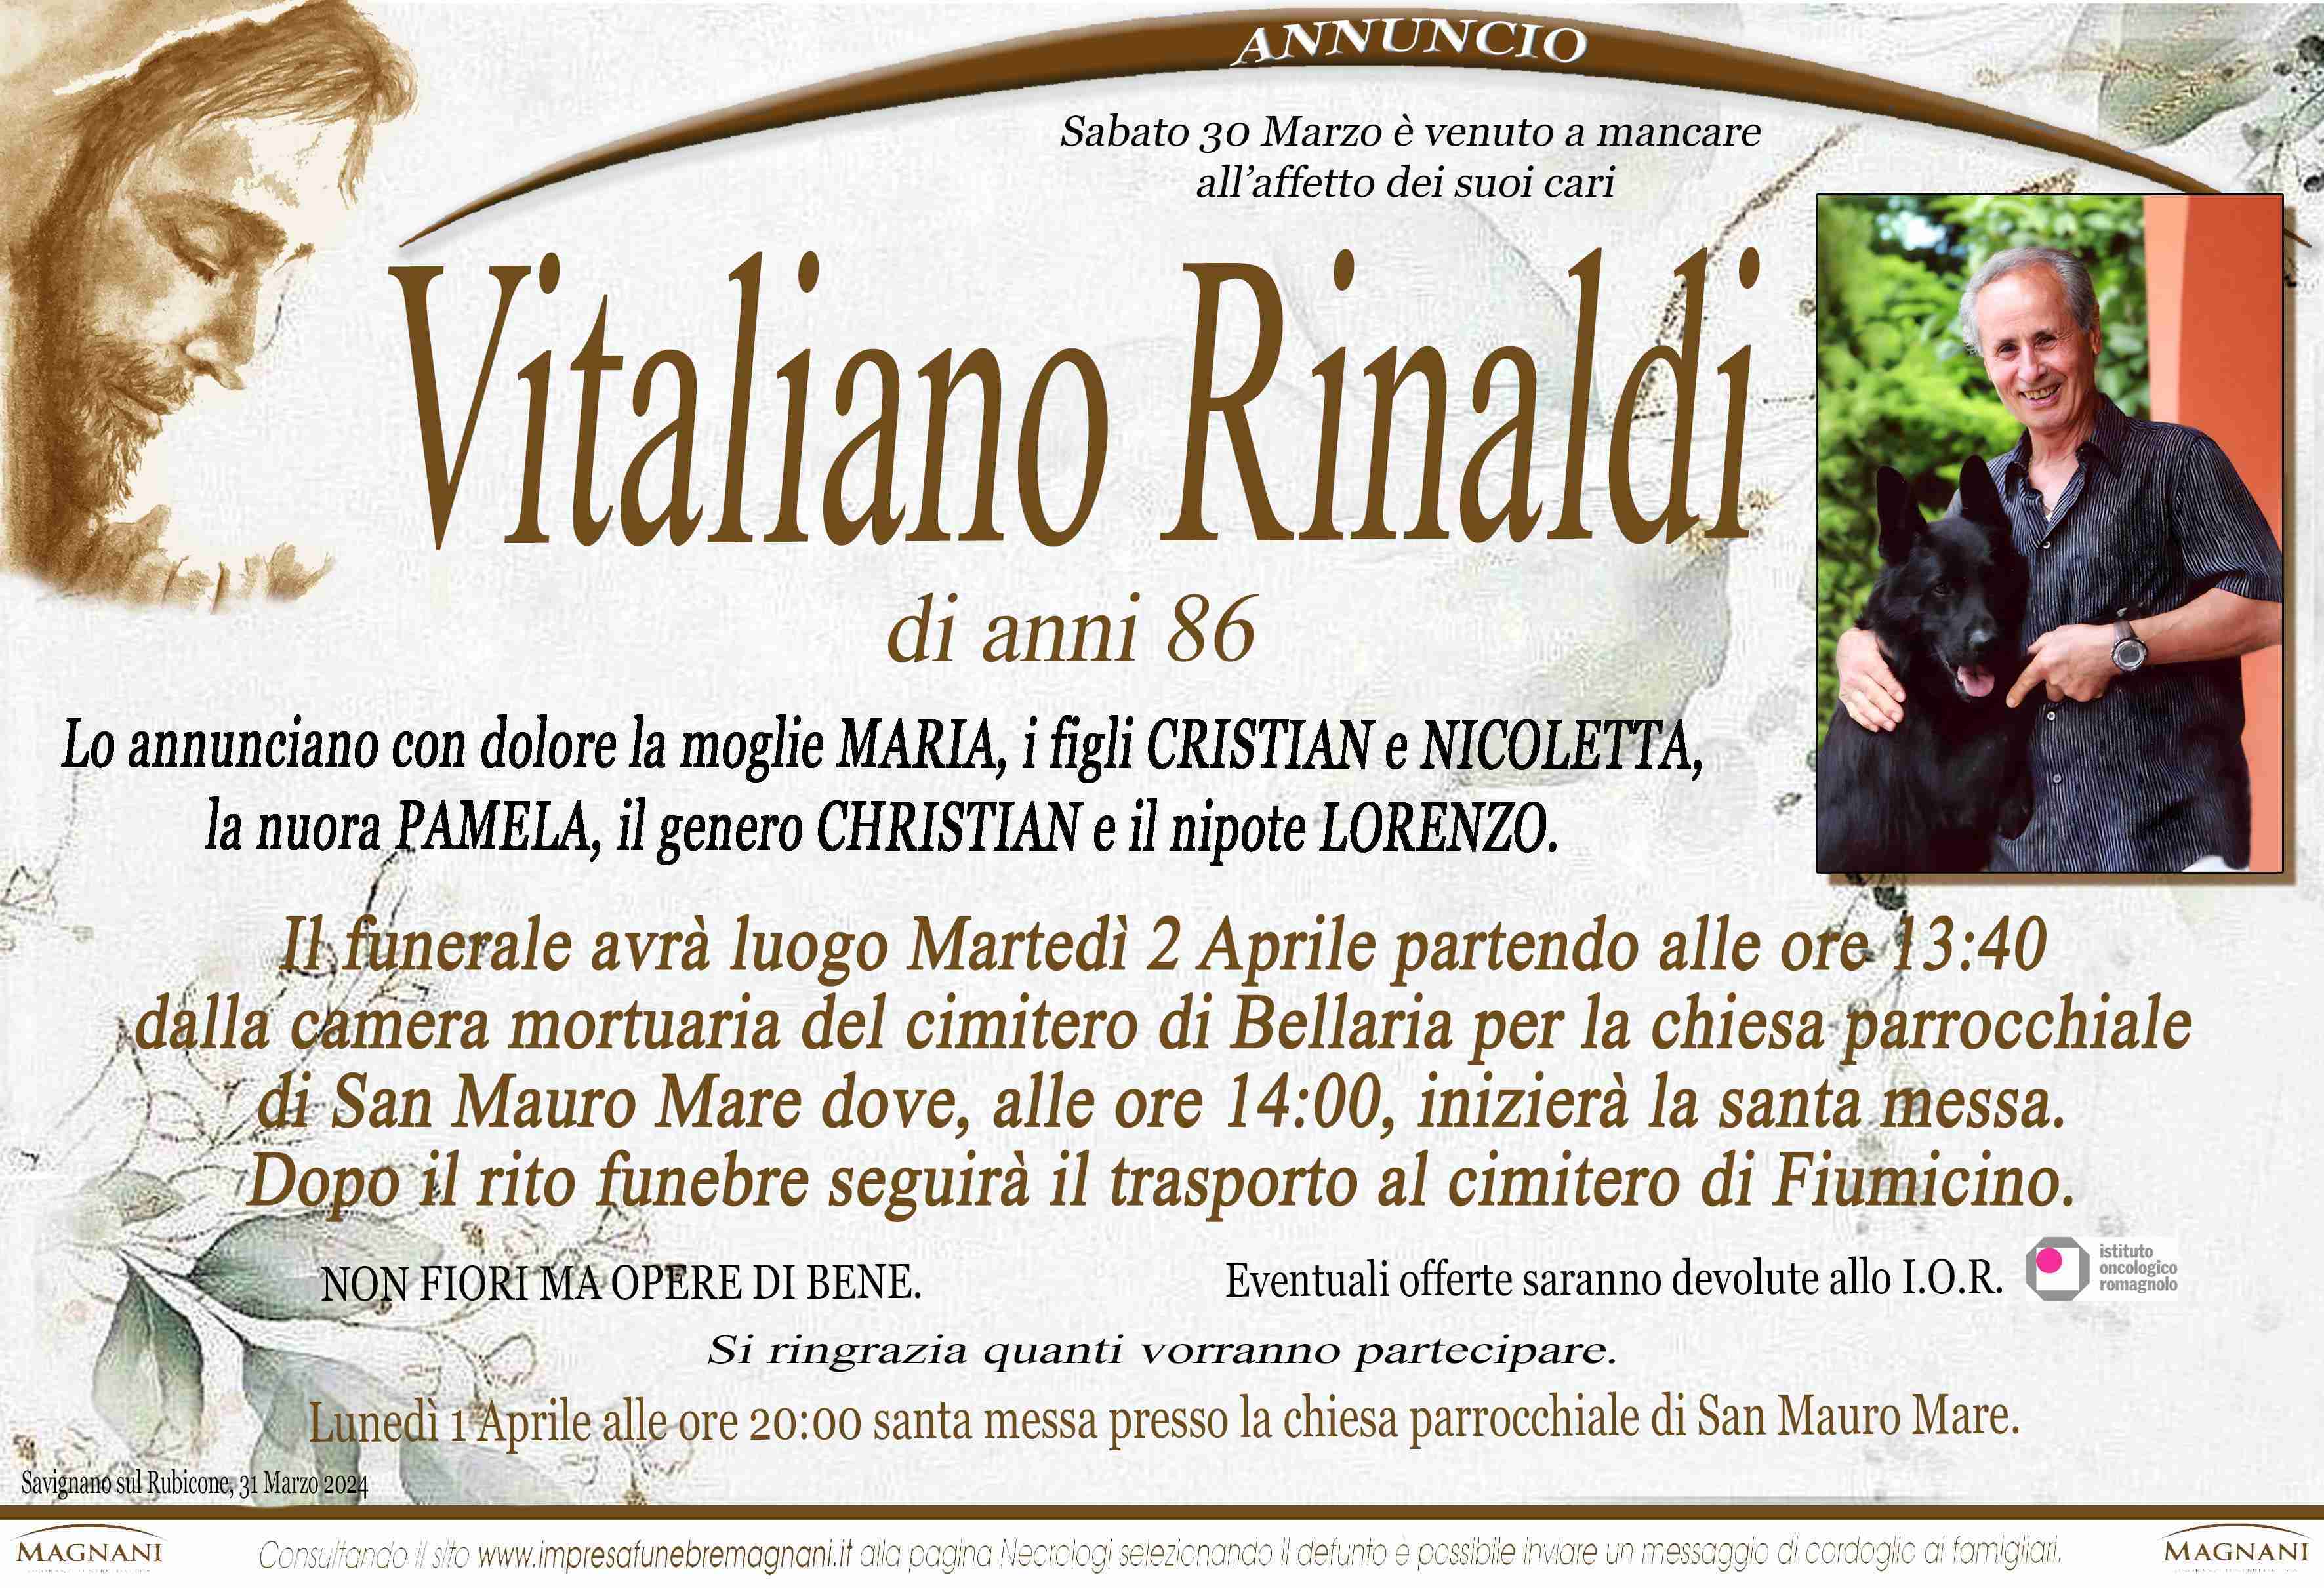 Vitaliano Rinaldi